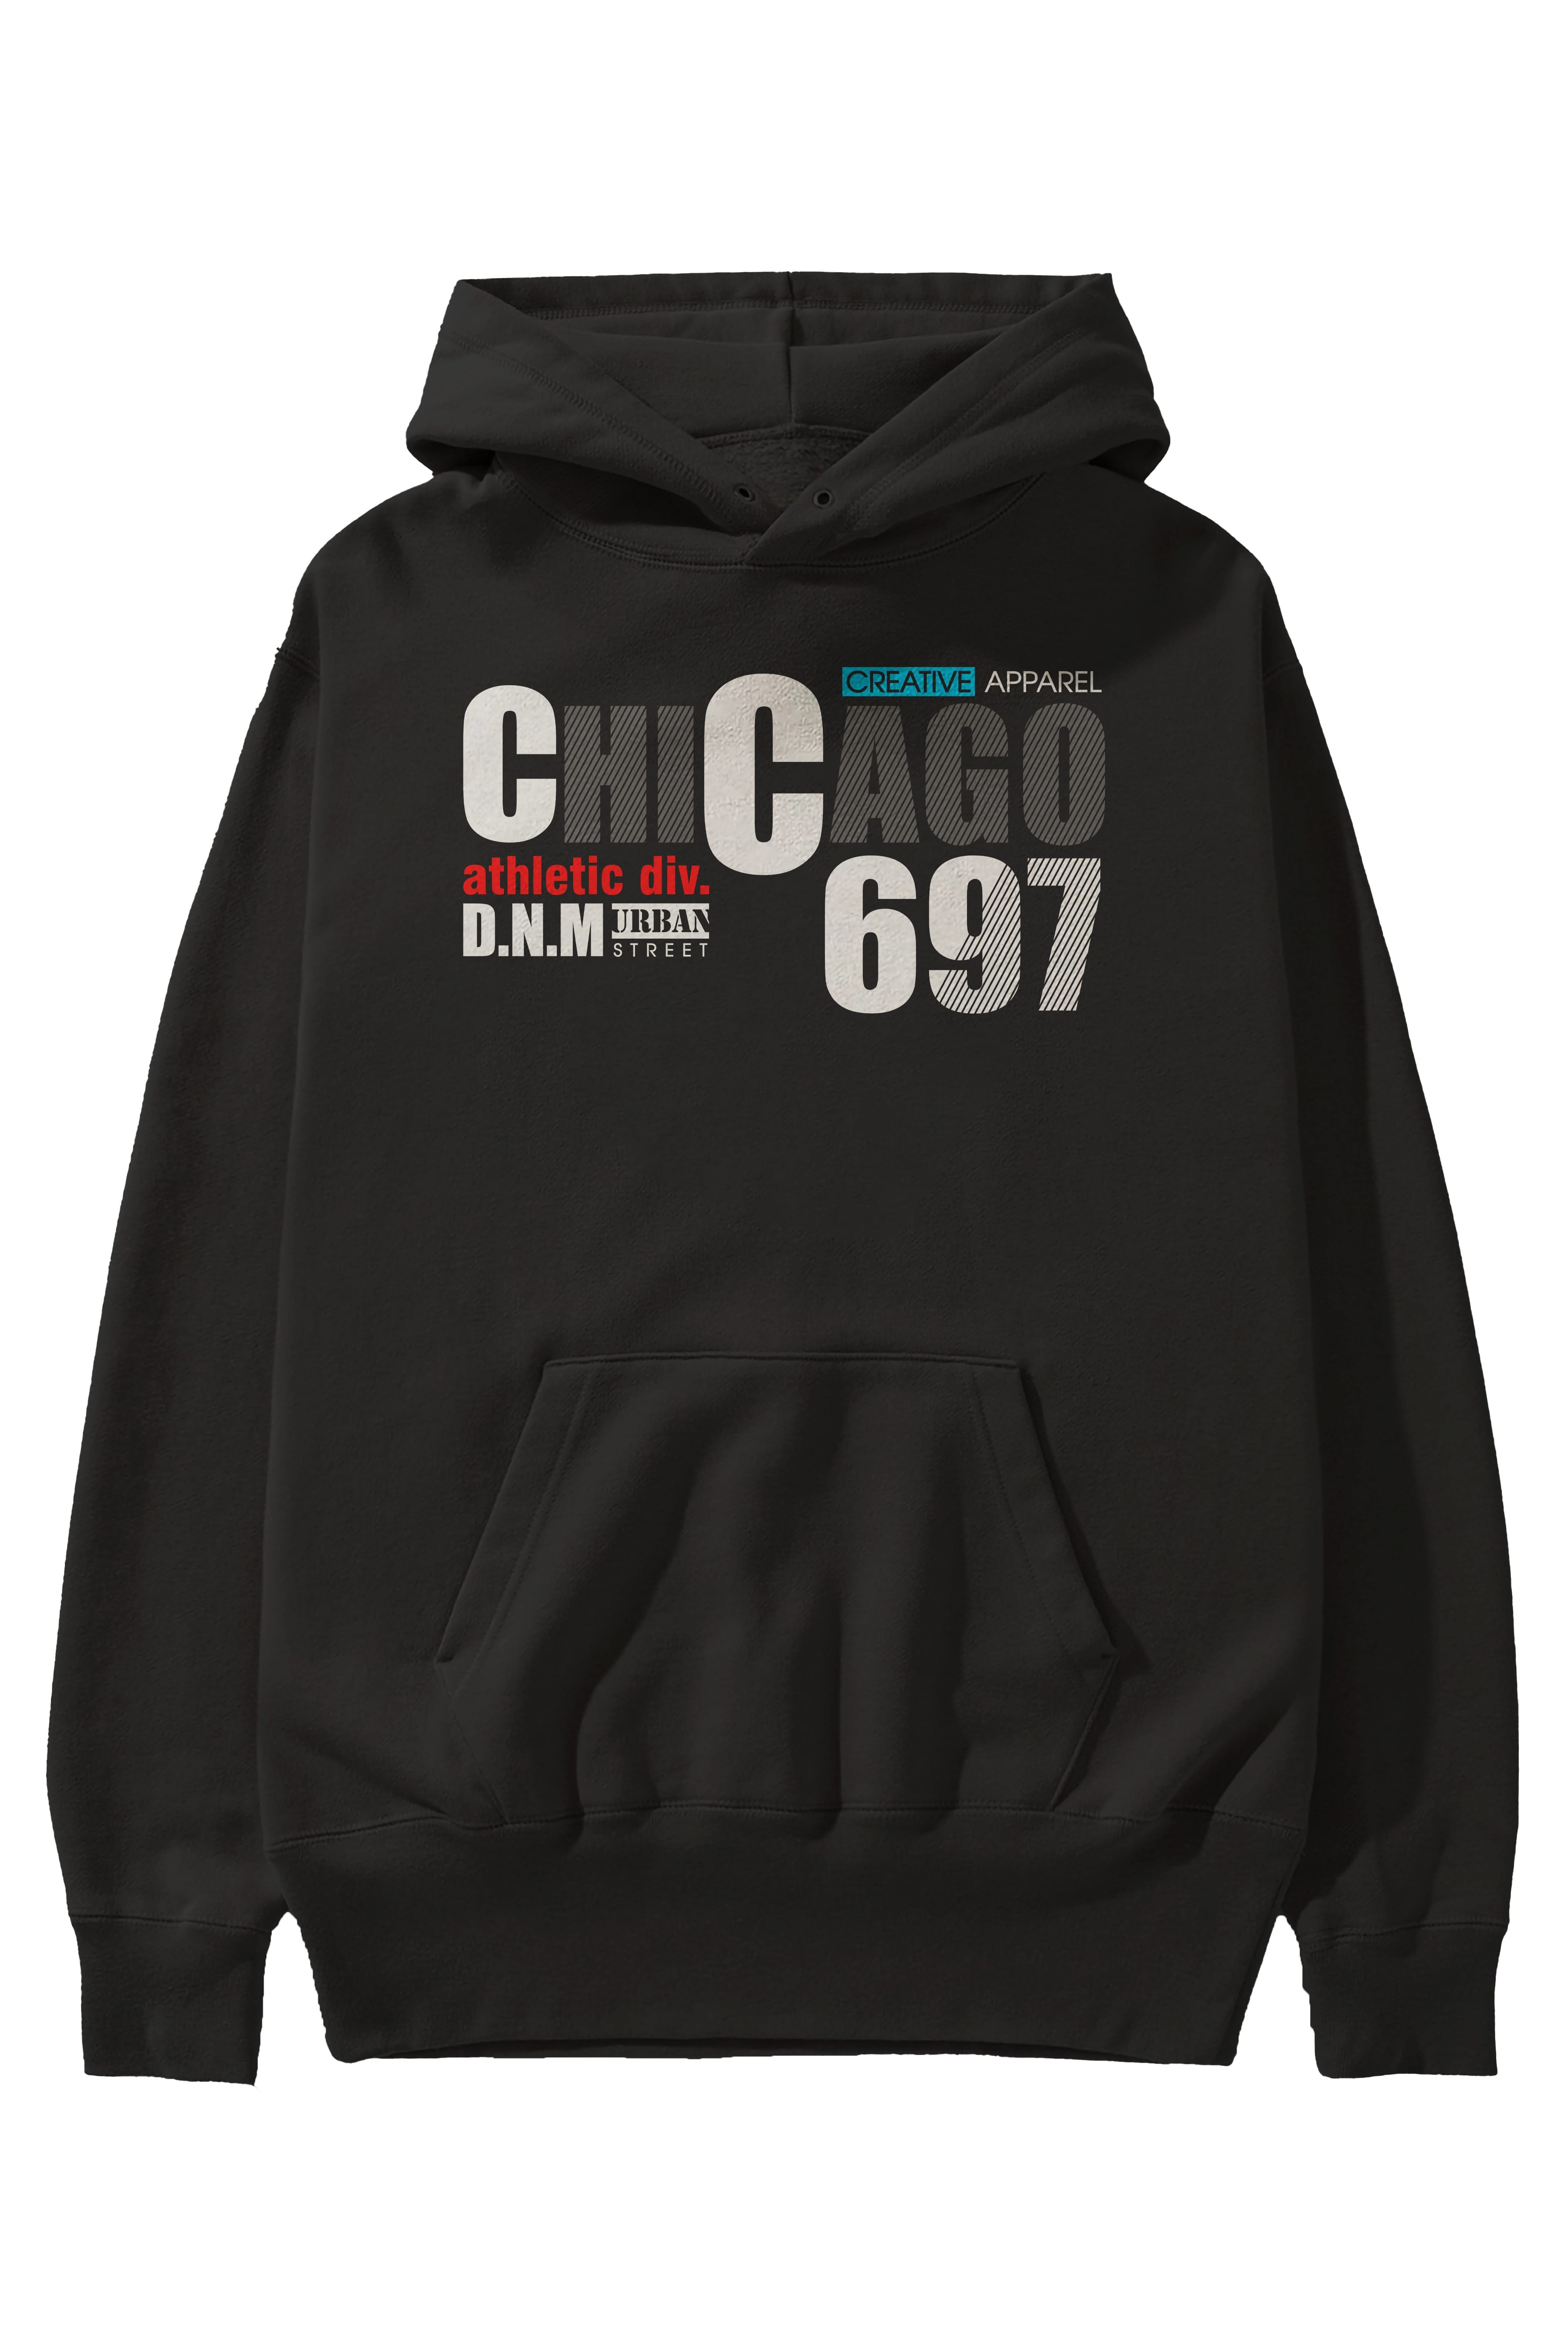 Chicago 697 Ön Baskılı Oversize Hoodie Kapüşonlu Sweatshirt Erkek Kadın Unisex